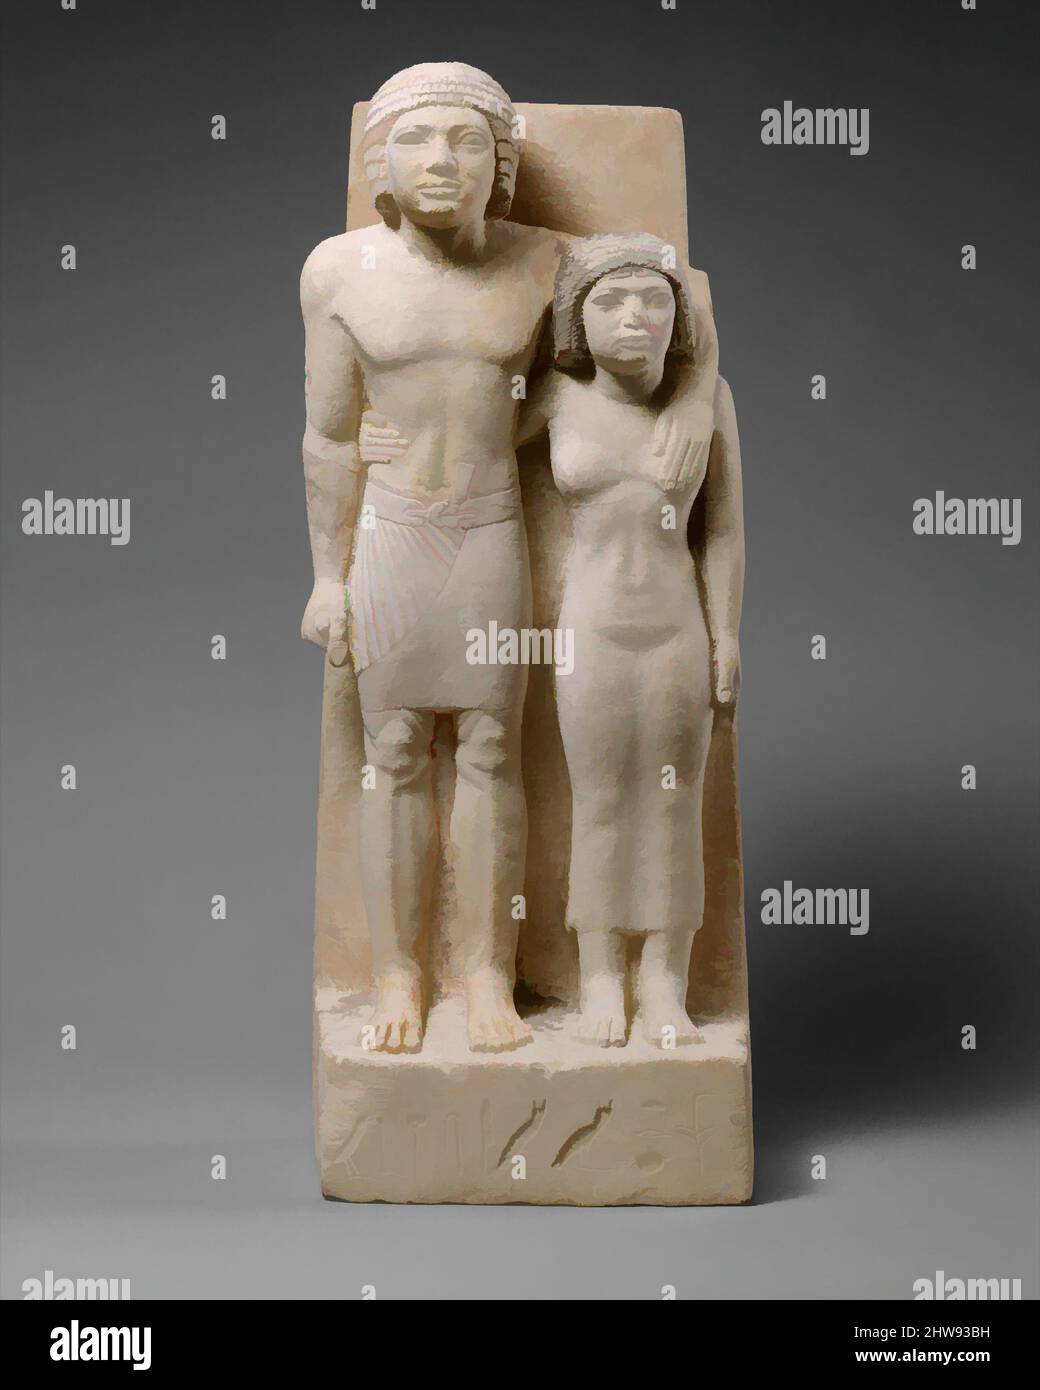 Arte ispirata ai reali conoscenti Memi e Sabu, Antico Regno, Dinastia 4, ca. 2575–2465 a.C., dall'Egitto; probabilmente dalla regione di Mifite, Giza, Cimitero Occidentale, calcare, vernice, h. 62 cm (24.7/16 poll.); w. 24,5 cm (9 5/8 poll.); d. 15,2 cm (6 poll.), questa statua evoca l'intimità di, opere classiche modernizzate da Artotop con un tuffo di modernità. Forme, colore e valore, impatto visivo accattivante sulle emozioni artistiche attraverso la libertà delle opere d'arte in modo contemporaneo. Un messaggio senza tempo che persegue una nuova direzione selvaggiamente creativa. Artisti che si rivolgono al supporto digitale e creano l'NFT Artotop Foto Stock